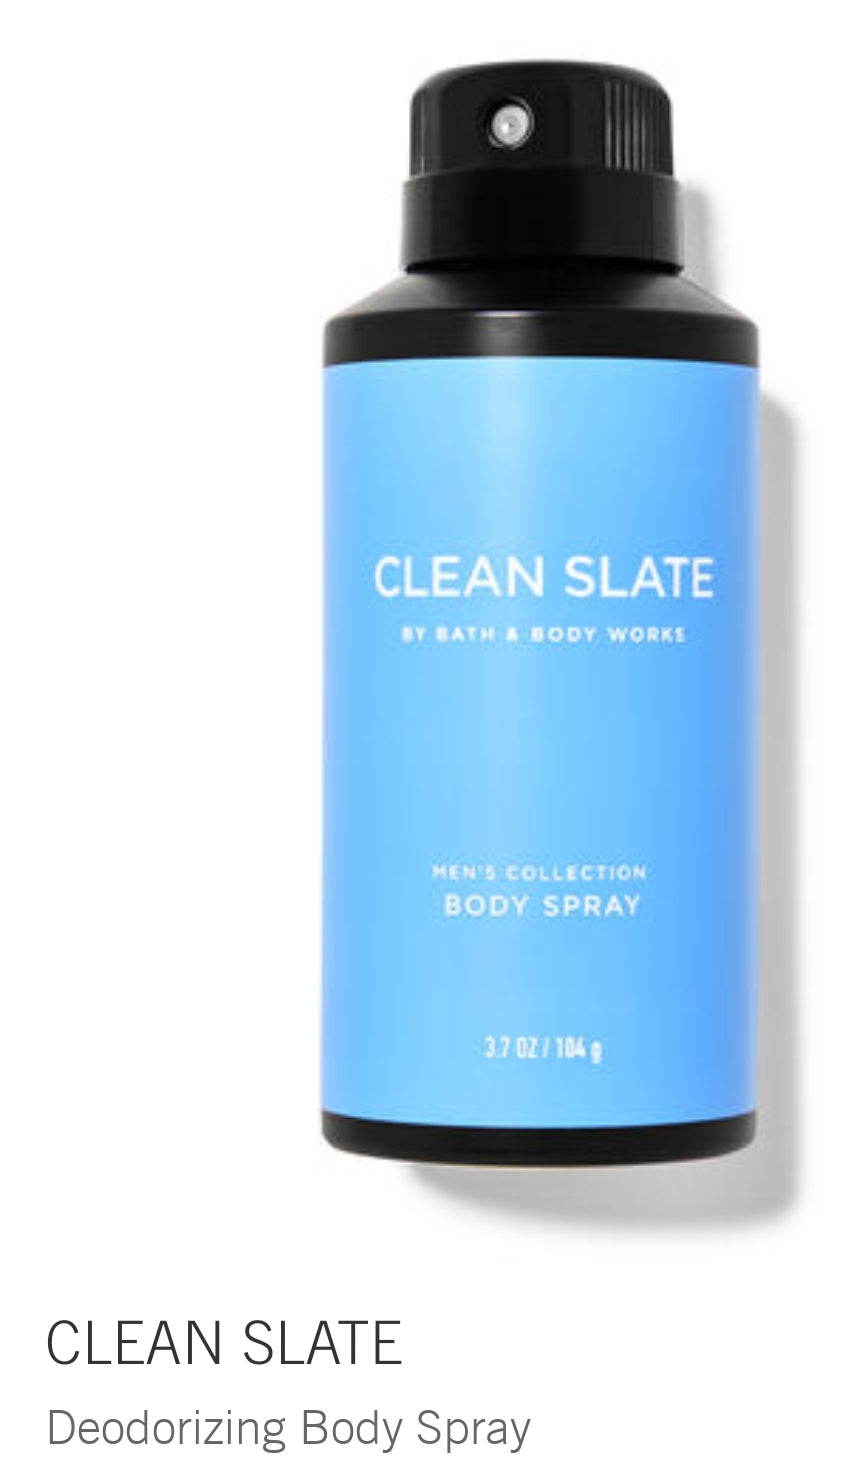 Clean slate body spray